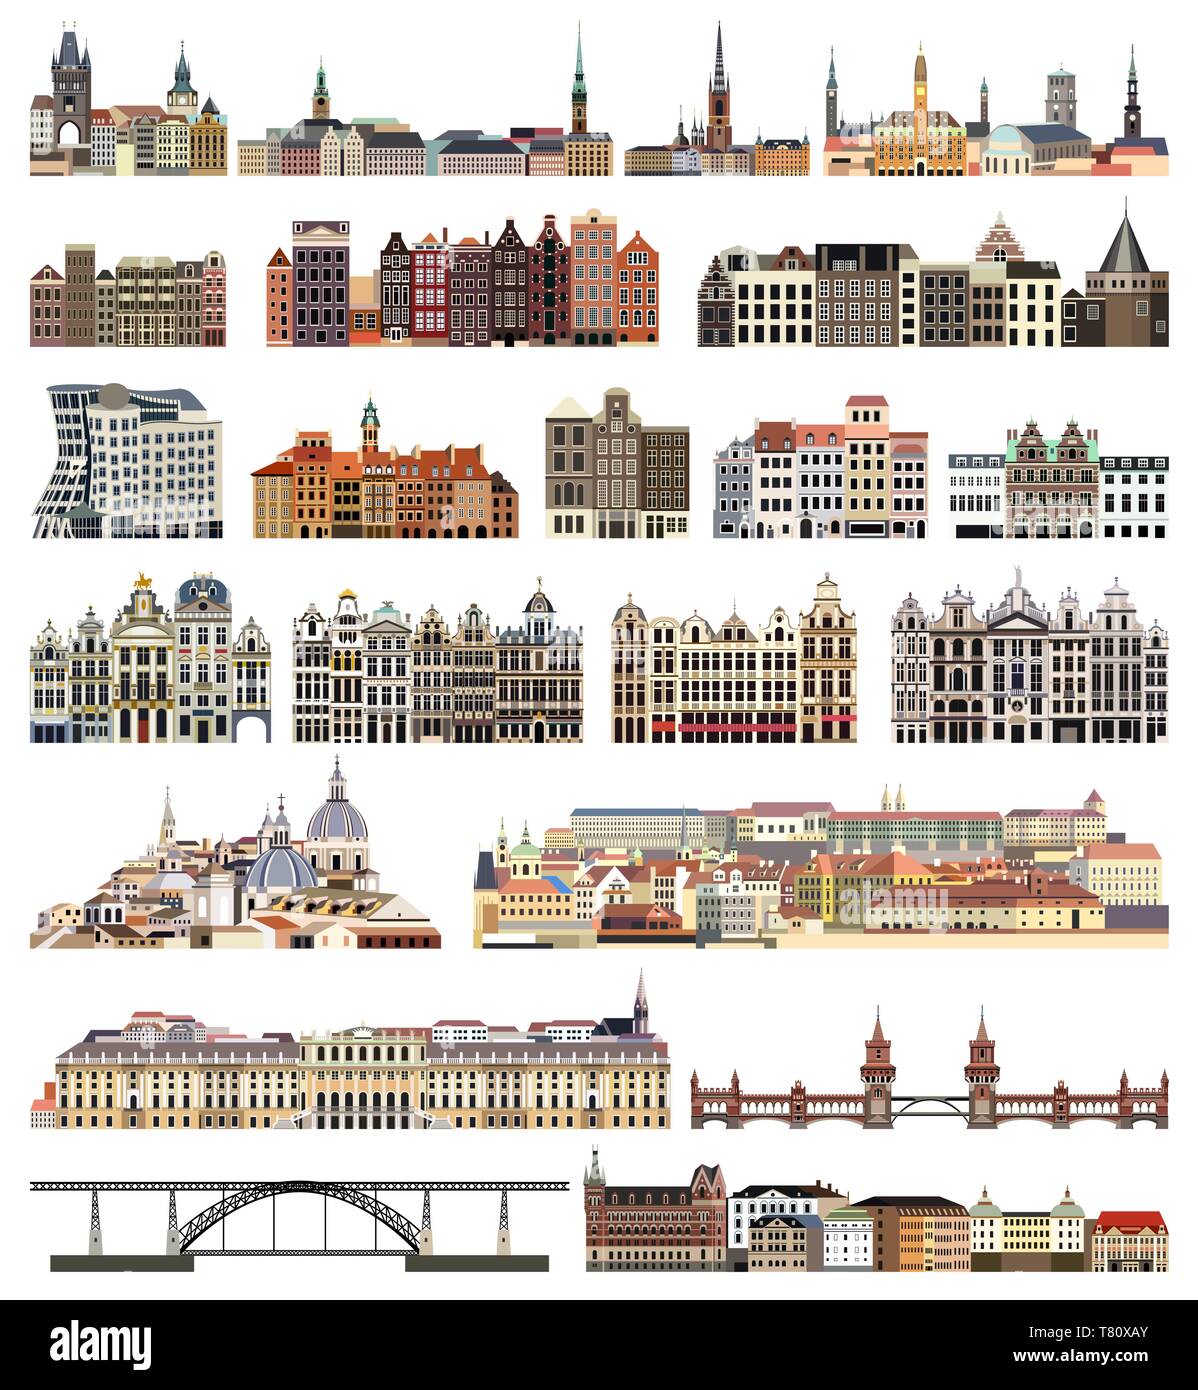 Vector set de maisons isolées, des bâtiments, des ponts et d'autres villes d'éléments à l'horizon de la rue Illustration de Vecteur